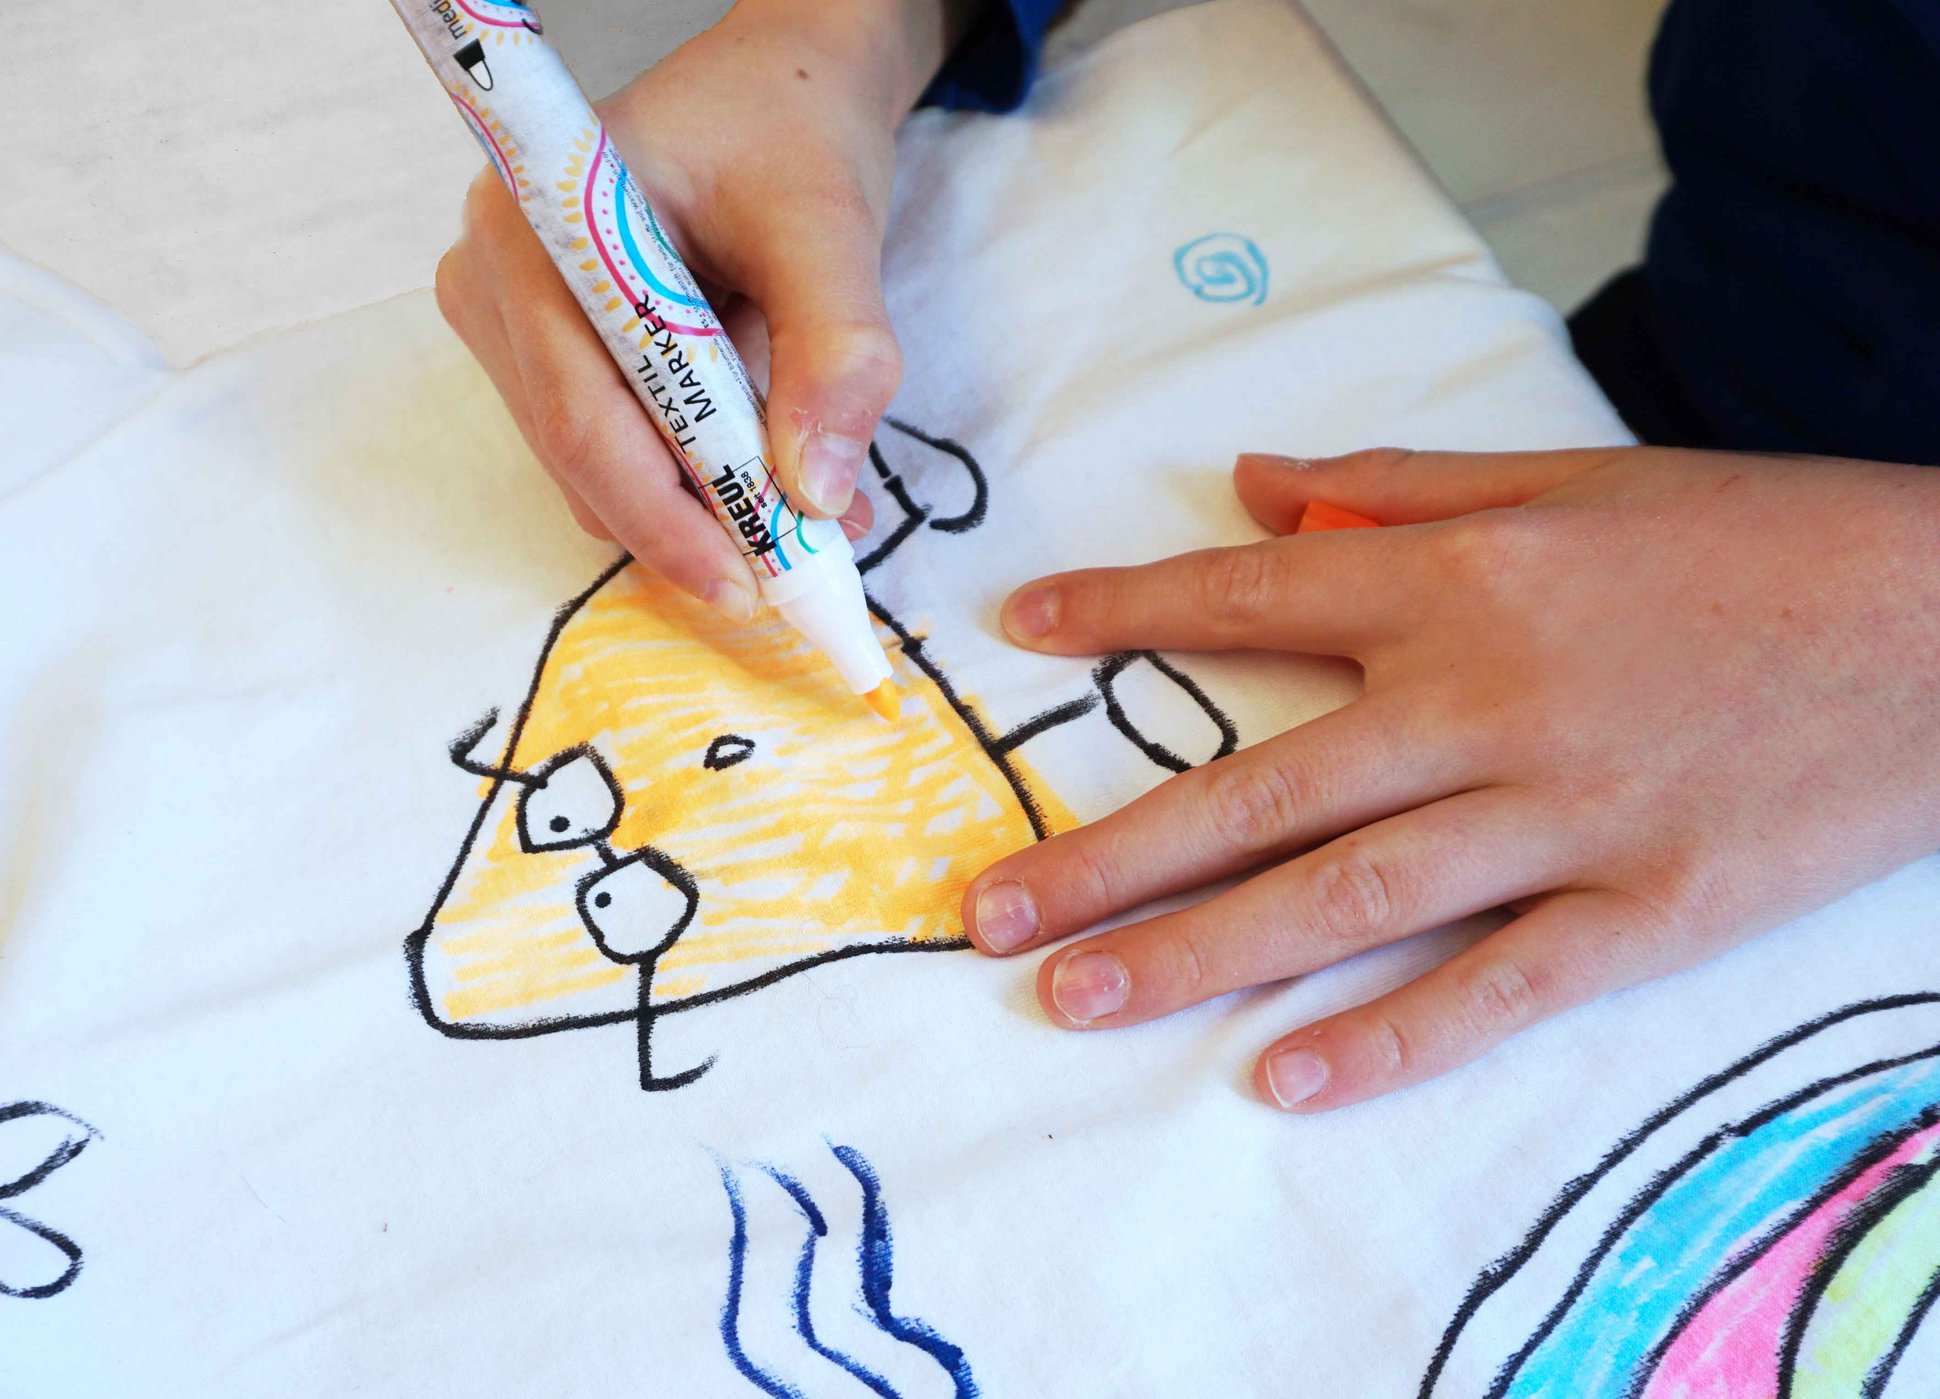 KREUL Textil Marker Kinder Malen Stoff Tshirt Tasche 